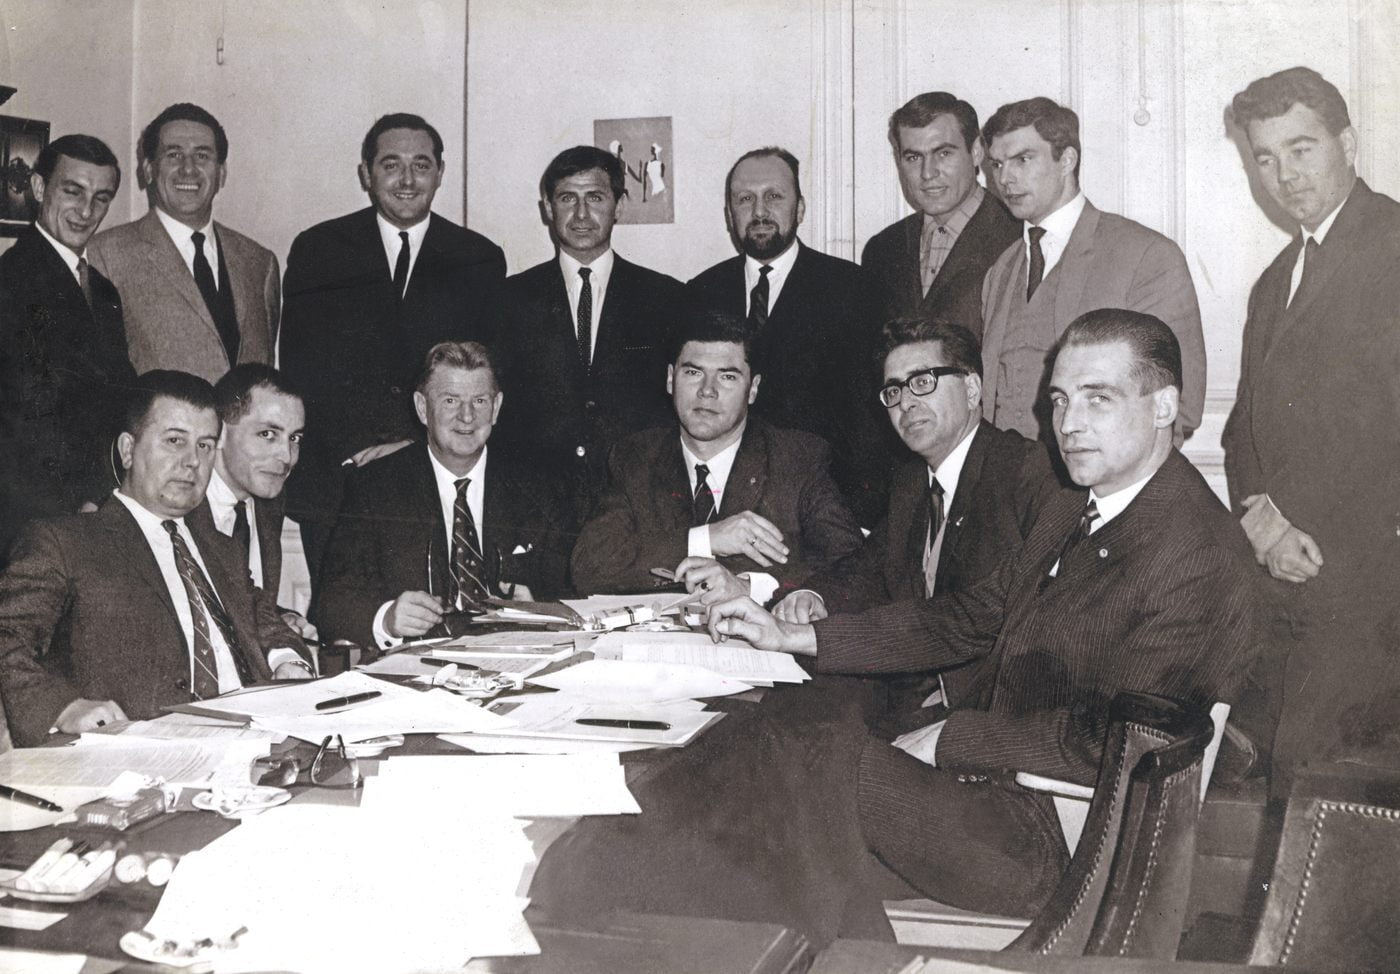 15 décembre 1965, acte fondateur de la Fifpro, avec au centre derrière de gauche à droite : Roger Blanpain, Michel Hidalgo et Jacques Bertrand